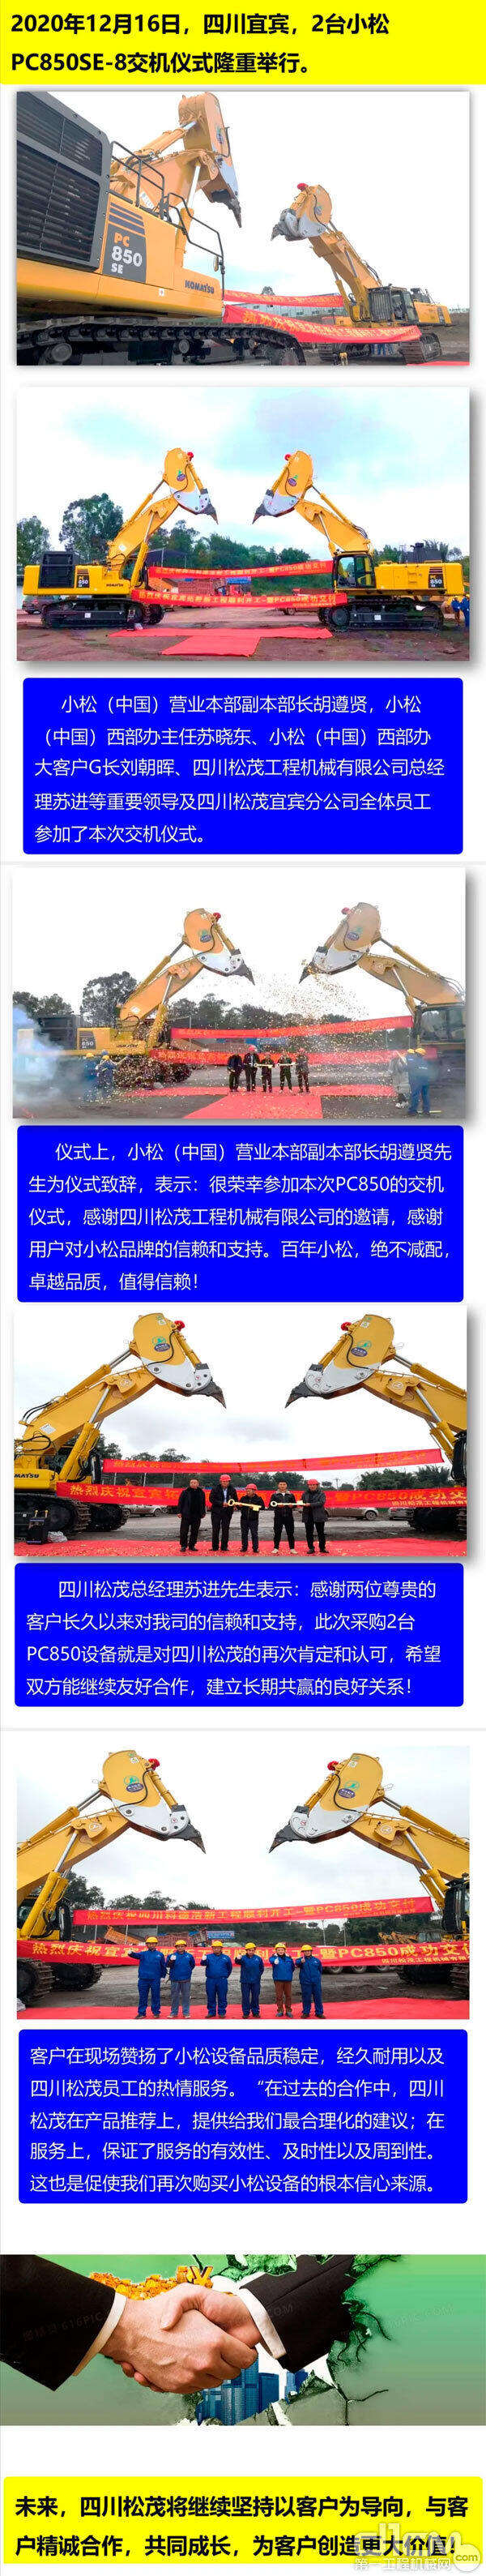 两台小松PC850SE-8挖掘机顺利交付四川宜宾客户